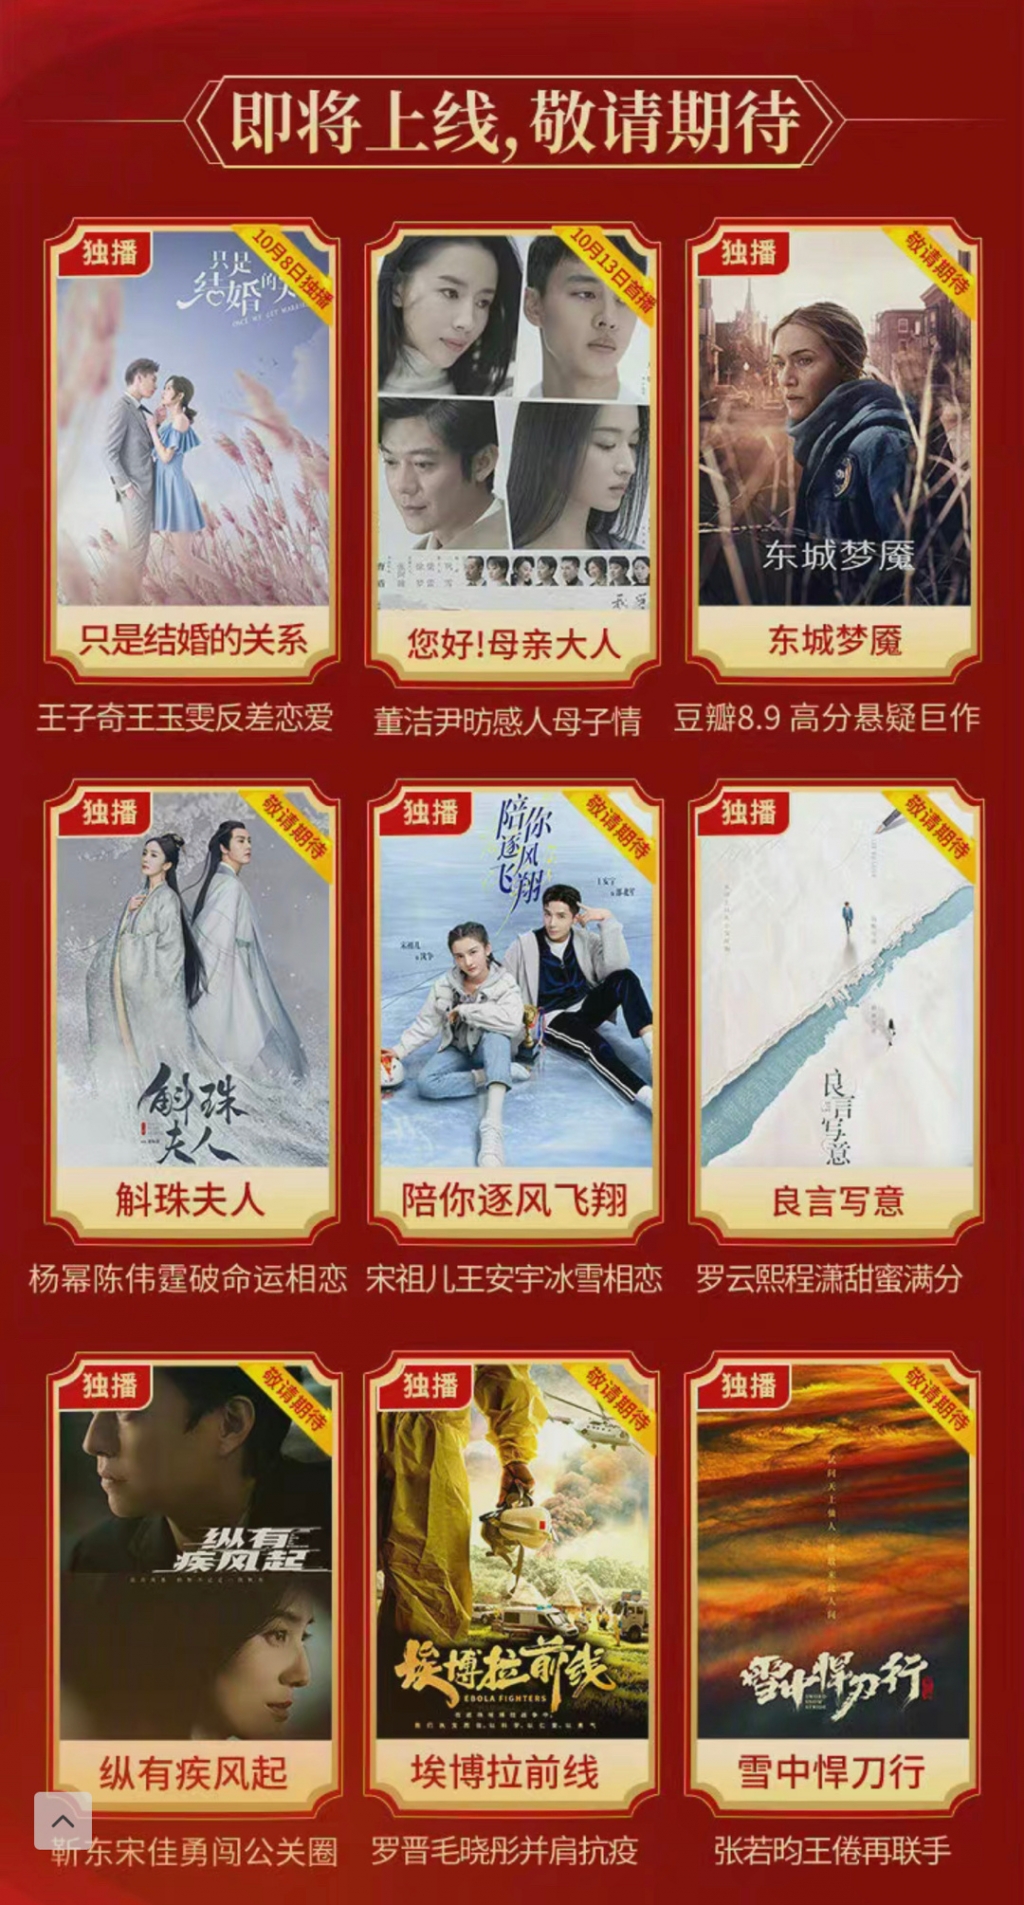 8 bộ phim Hoa ngữ chuẩn bị lên sóng trong quý 4 của Tencent: 'Lương Ngôn Tả Ý' của La Vân Hi và Trình Tiêu liệu có làm nên thảm họa?